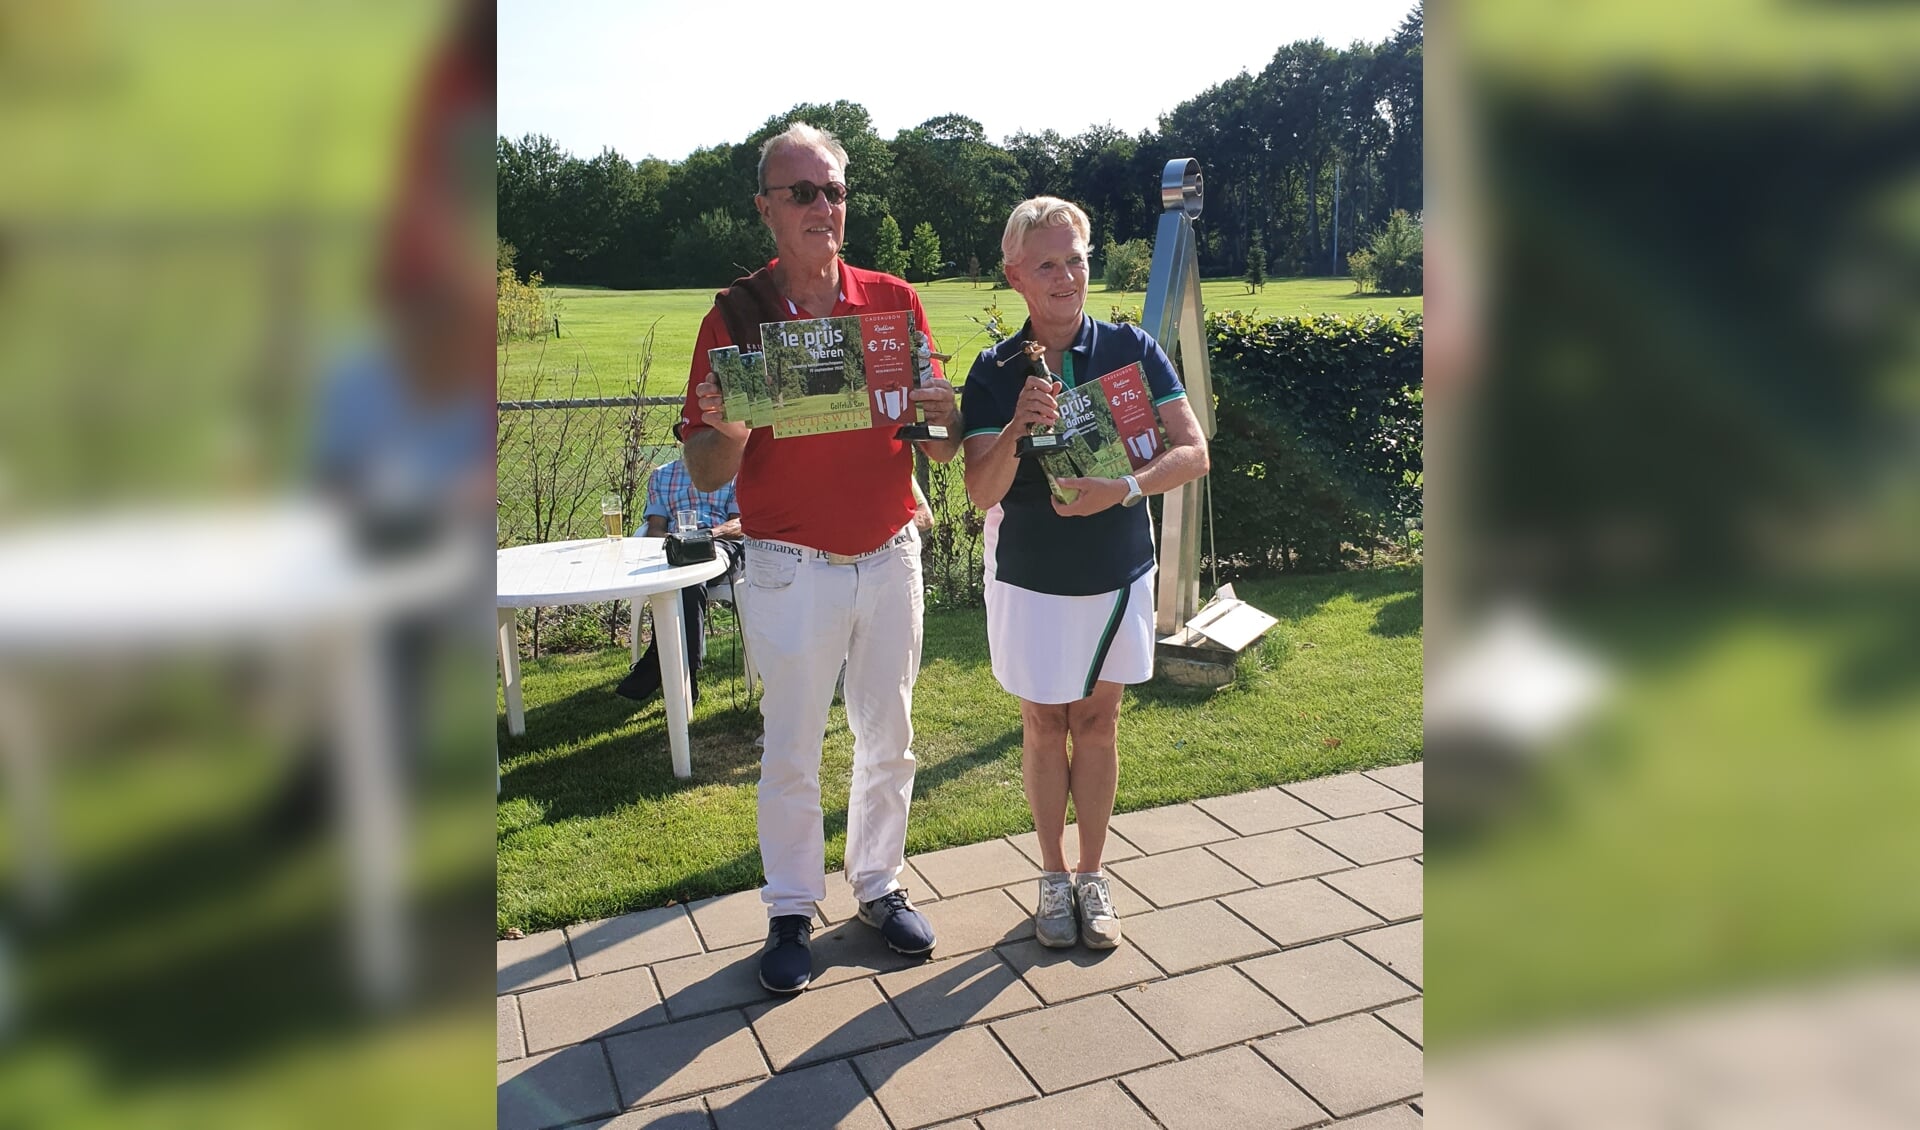 De winnaars van de clubkampioenschappen Hans van Rosmalen (l) en Monica Smolders (r)